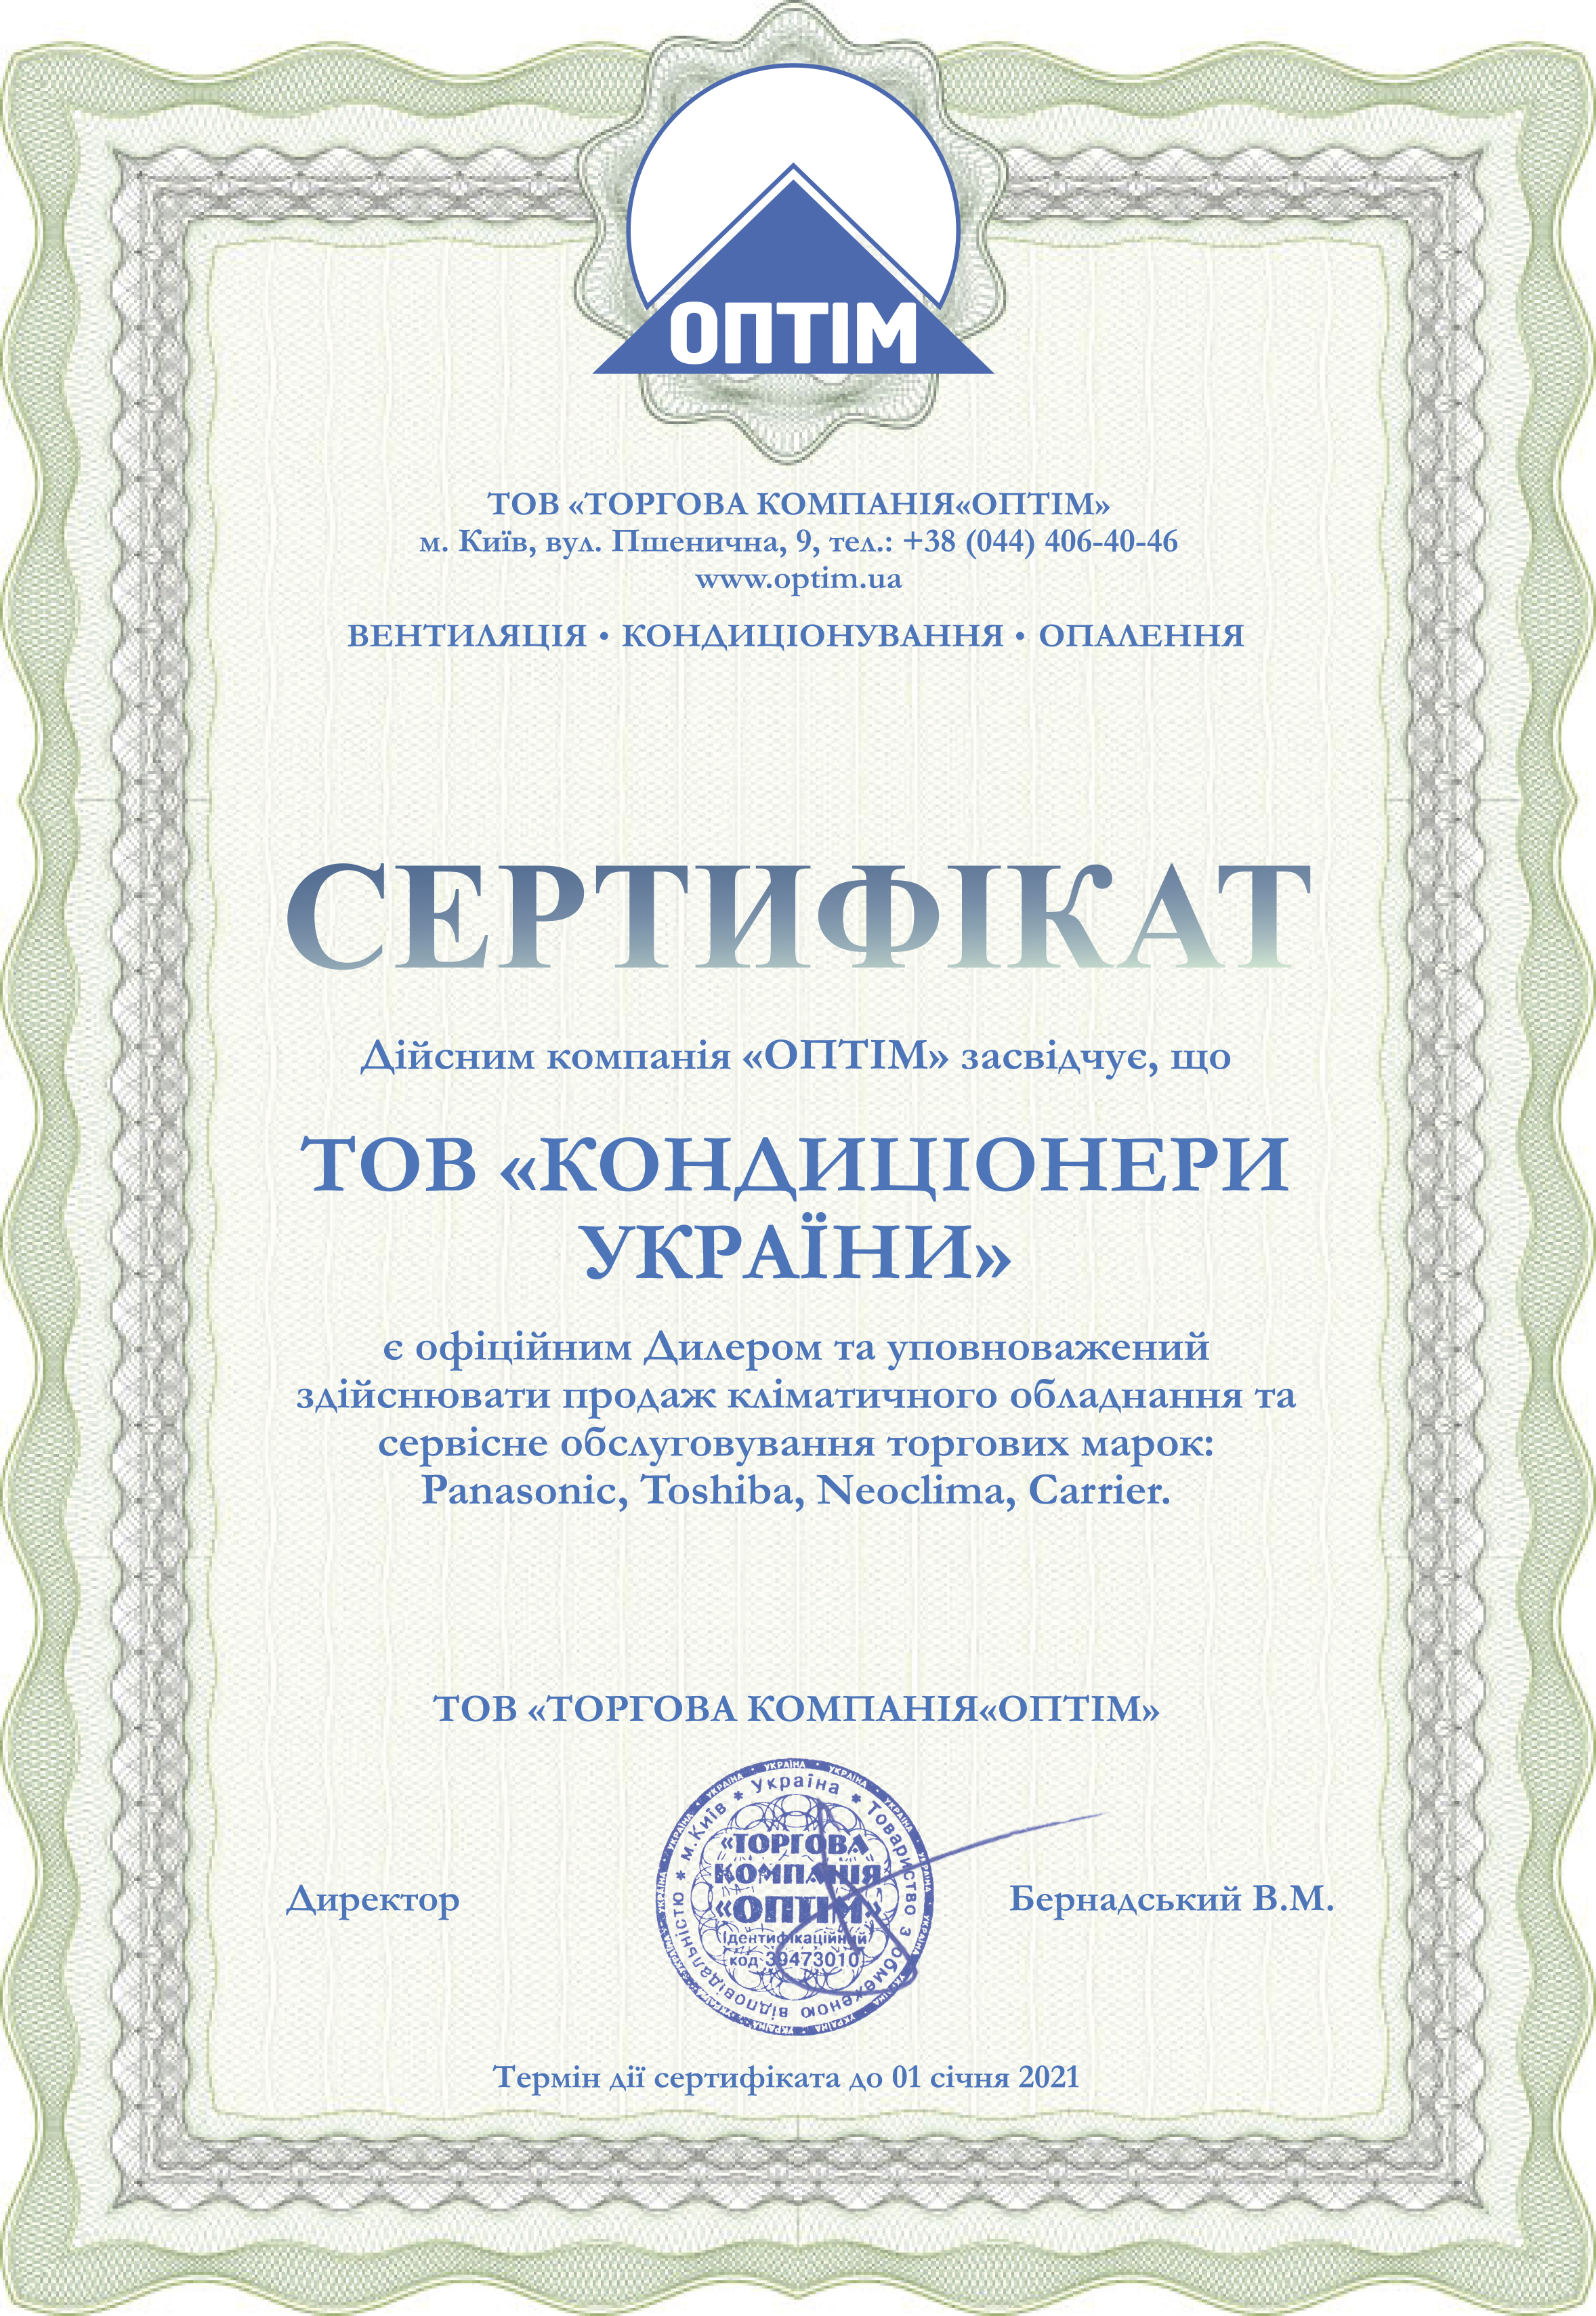 Сертифікат Кондиціонери Україні на продаж на монтаж Neoclima, Carrier, Toshiba, Panasonic